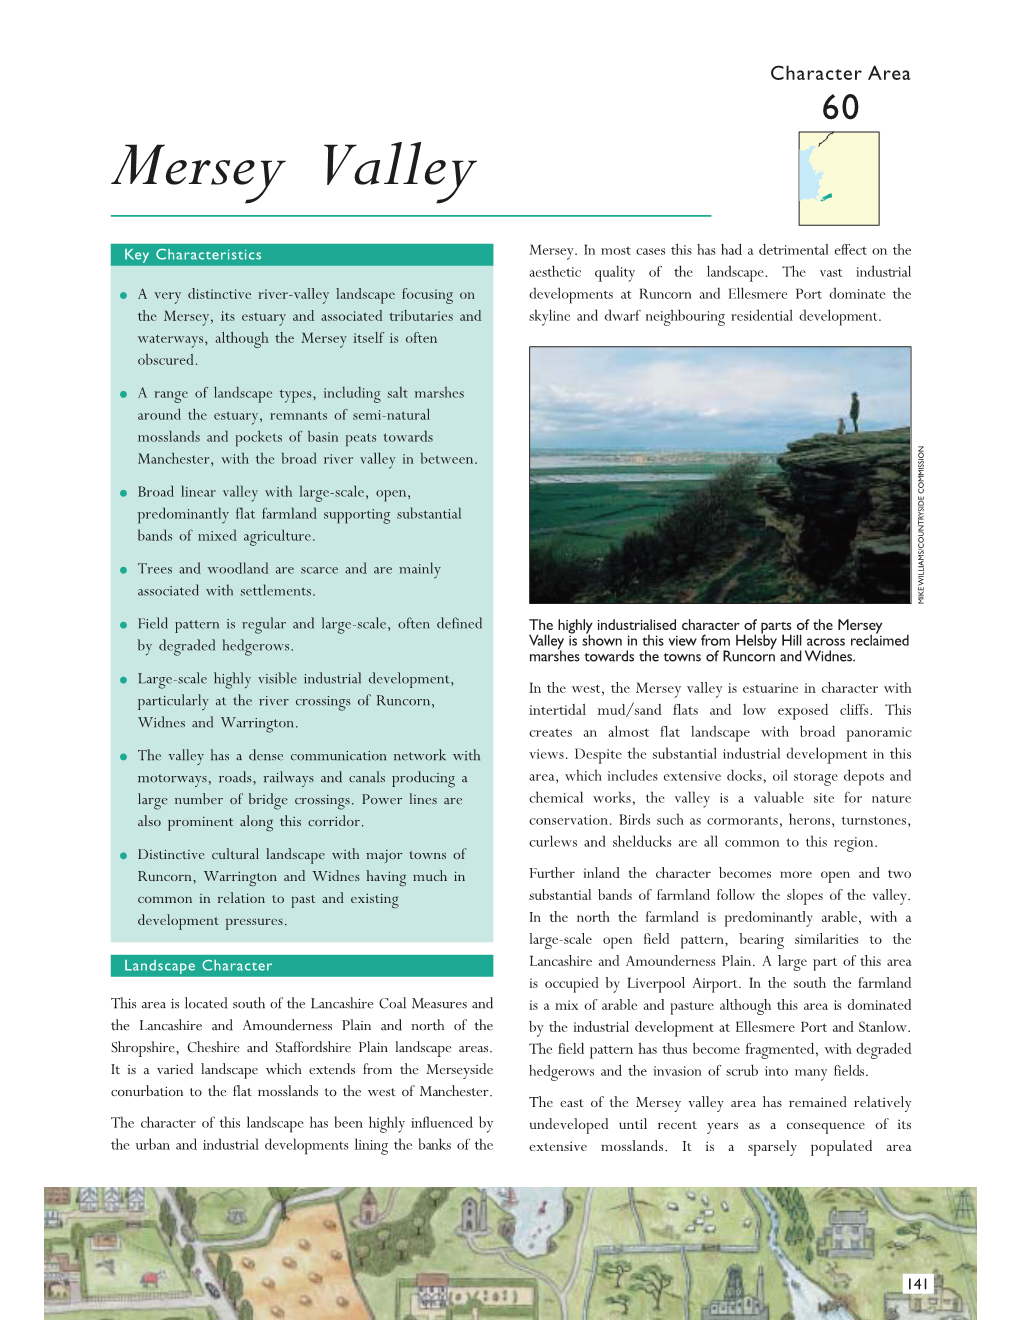 Mersey Valley